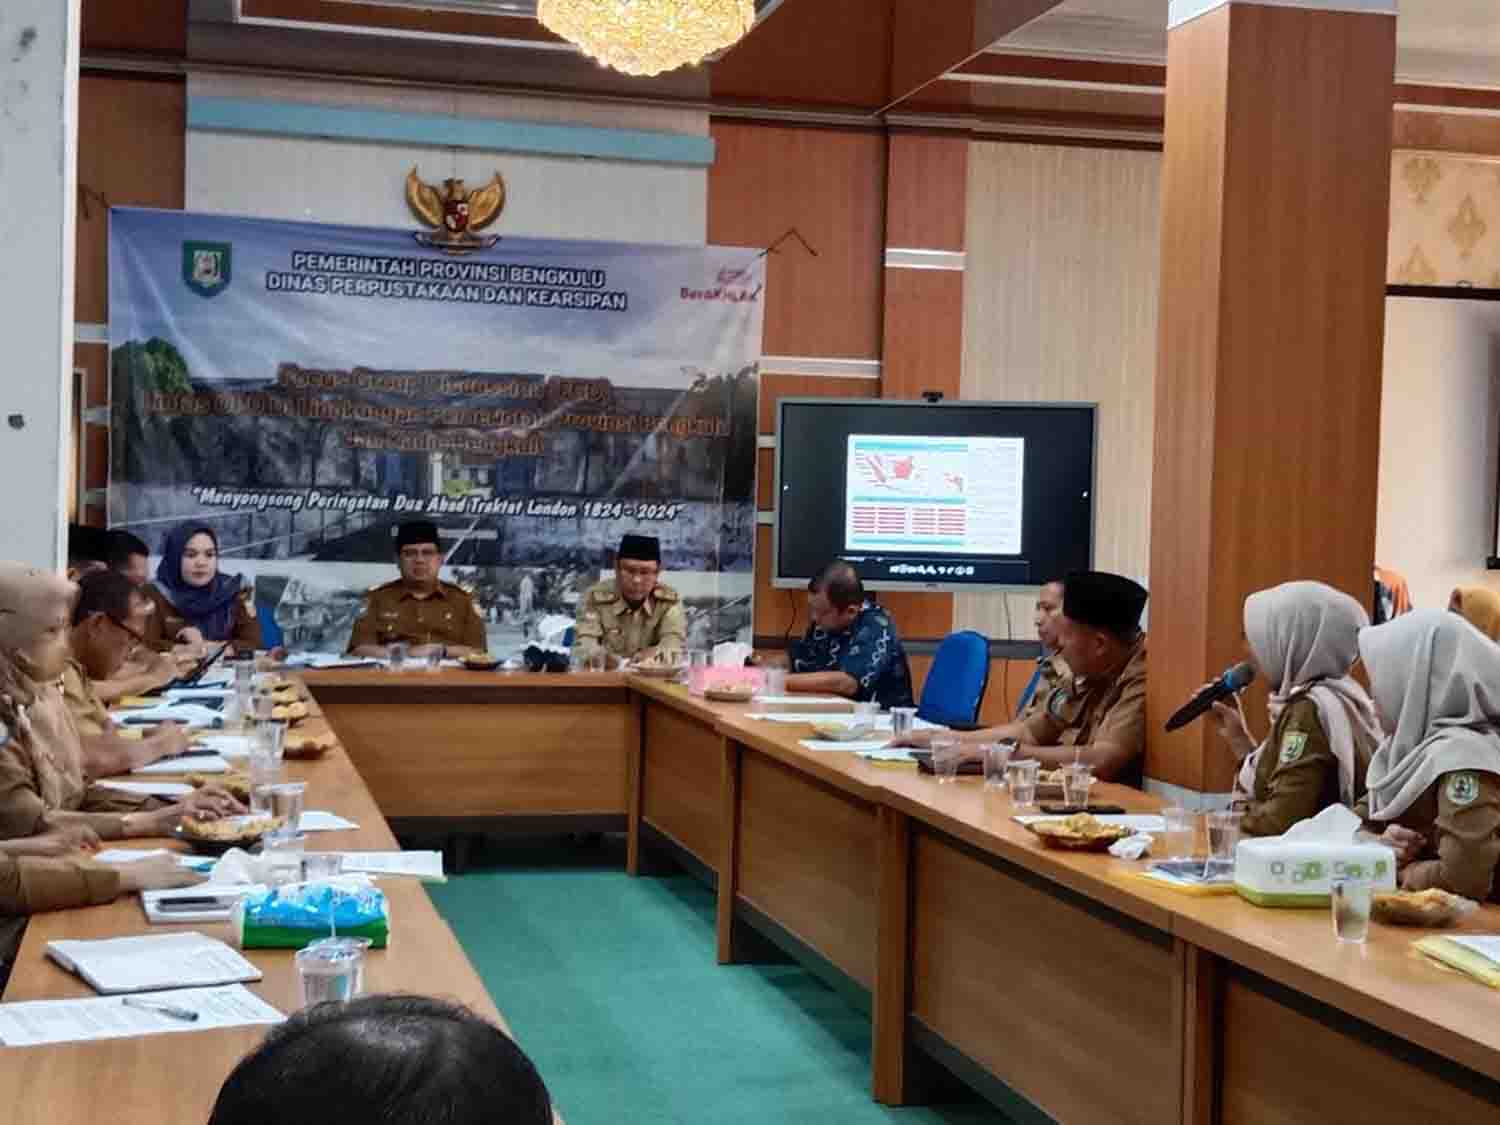 DPK Provinsi Bengkulu Optimalkan Potensi Sejarah